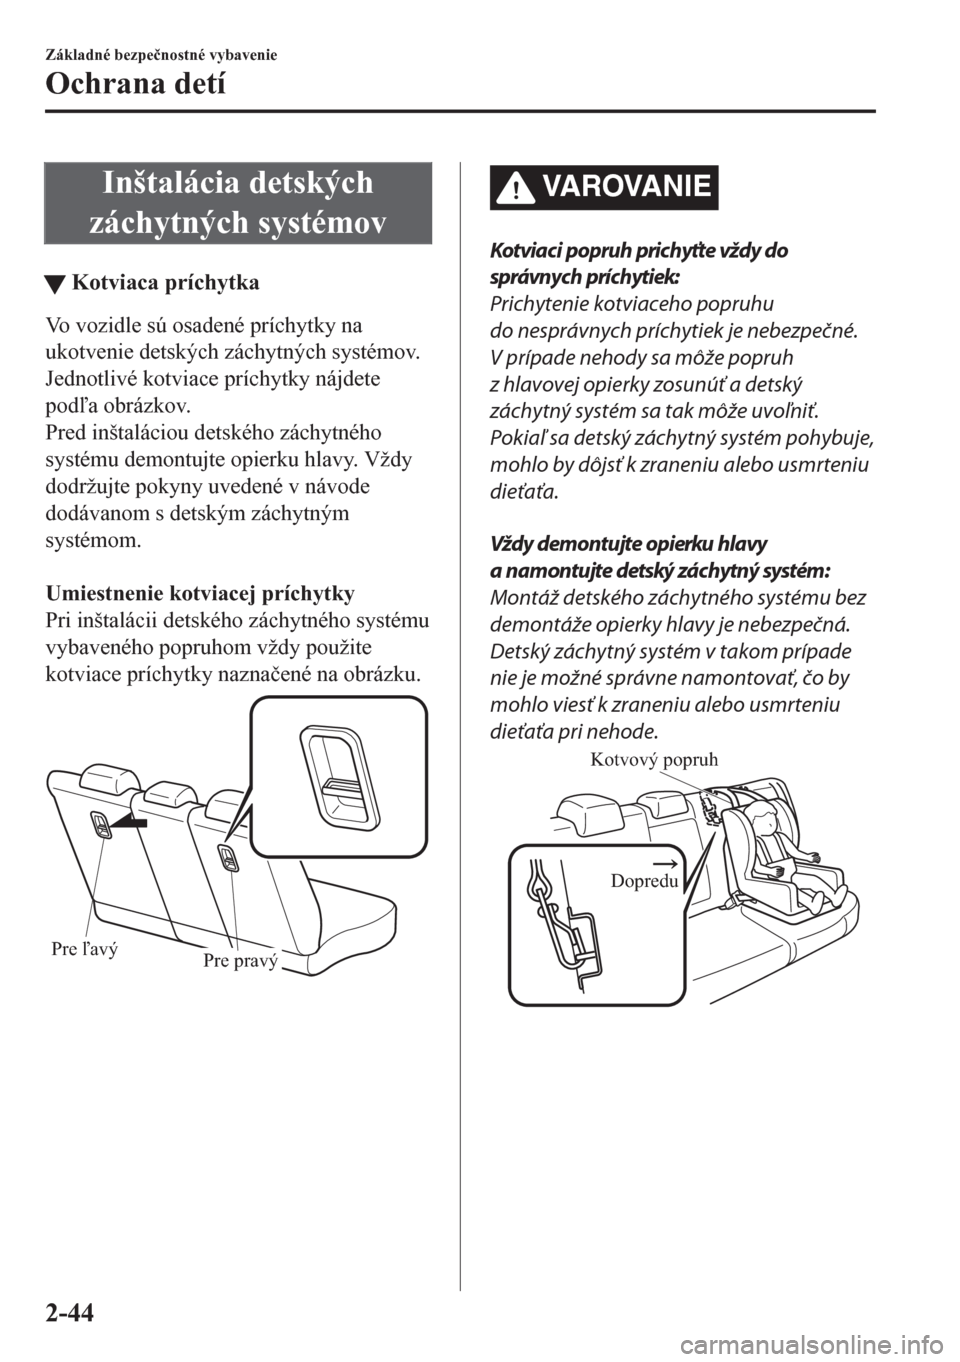 MAZDA MODEL CX-5 2018  Užívateľská príručka (in Slovak) Inštalácia detských
záchytných systémov
tKotviaca príchytka
Vo vozidle sú osadené príchytky na
ukotvenie detských záchytných systémov.
Jednotlivé kotviace príchytky nájdete
poda obr